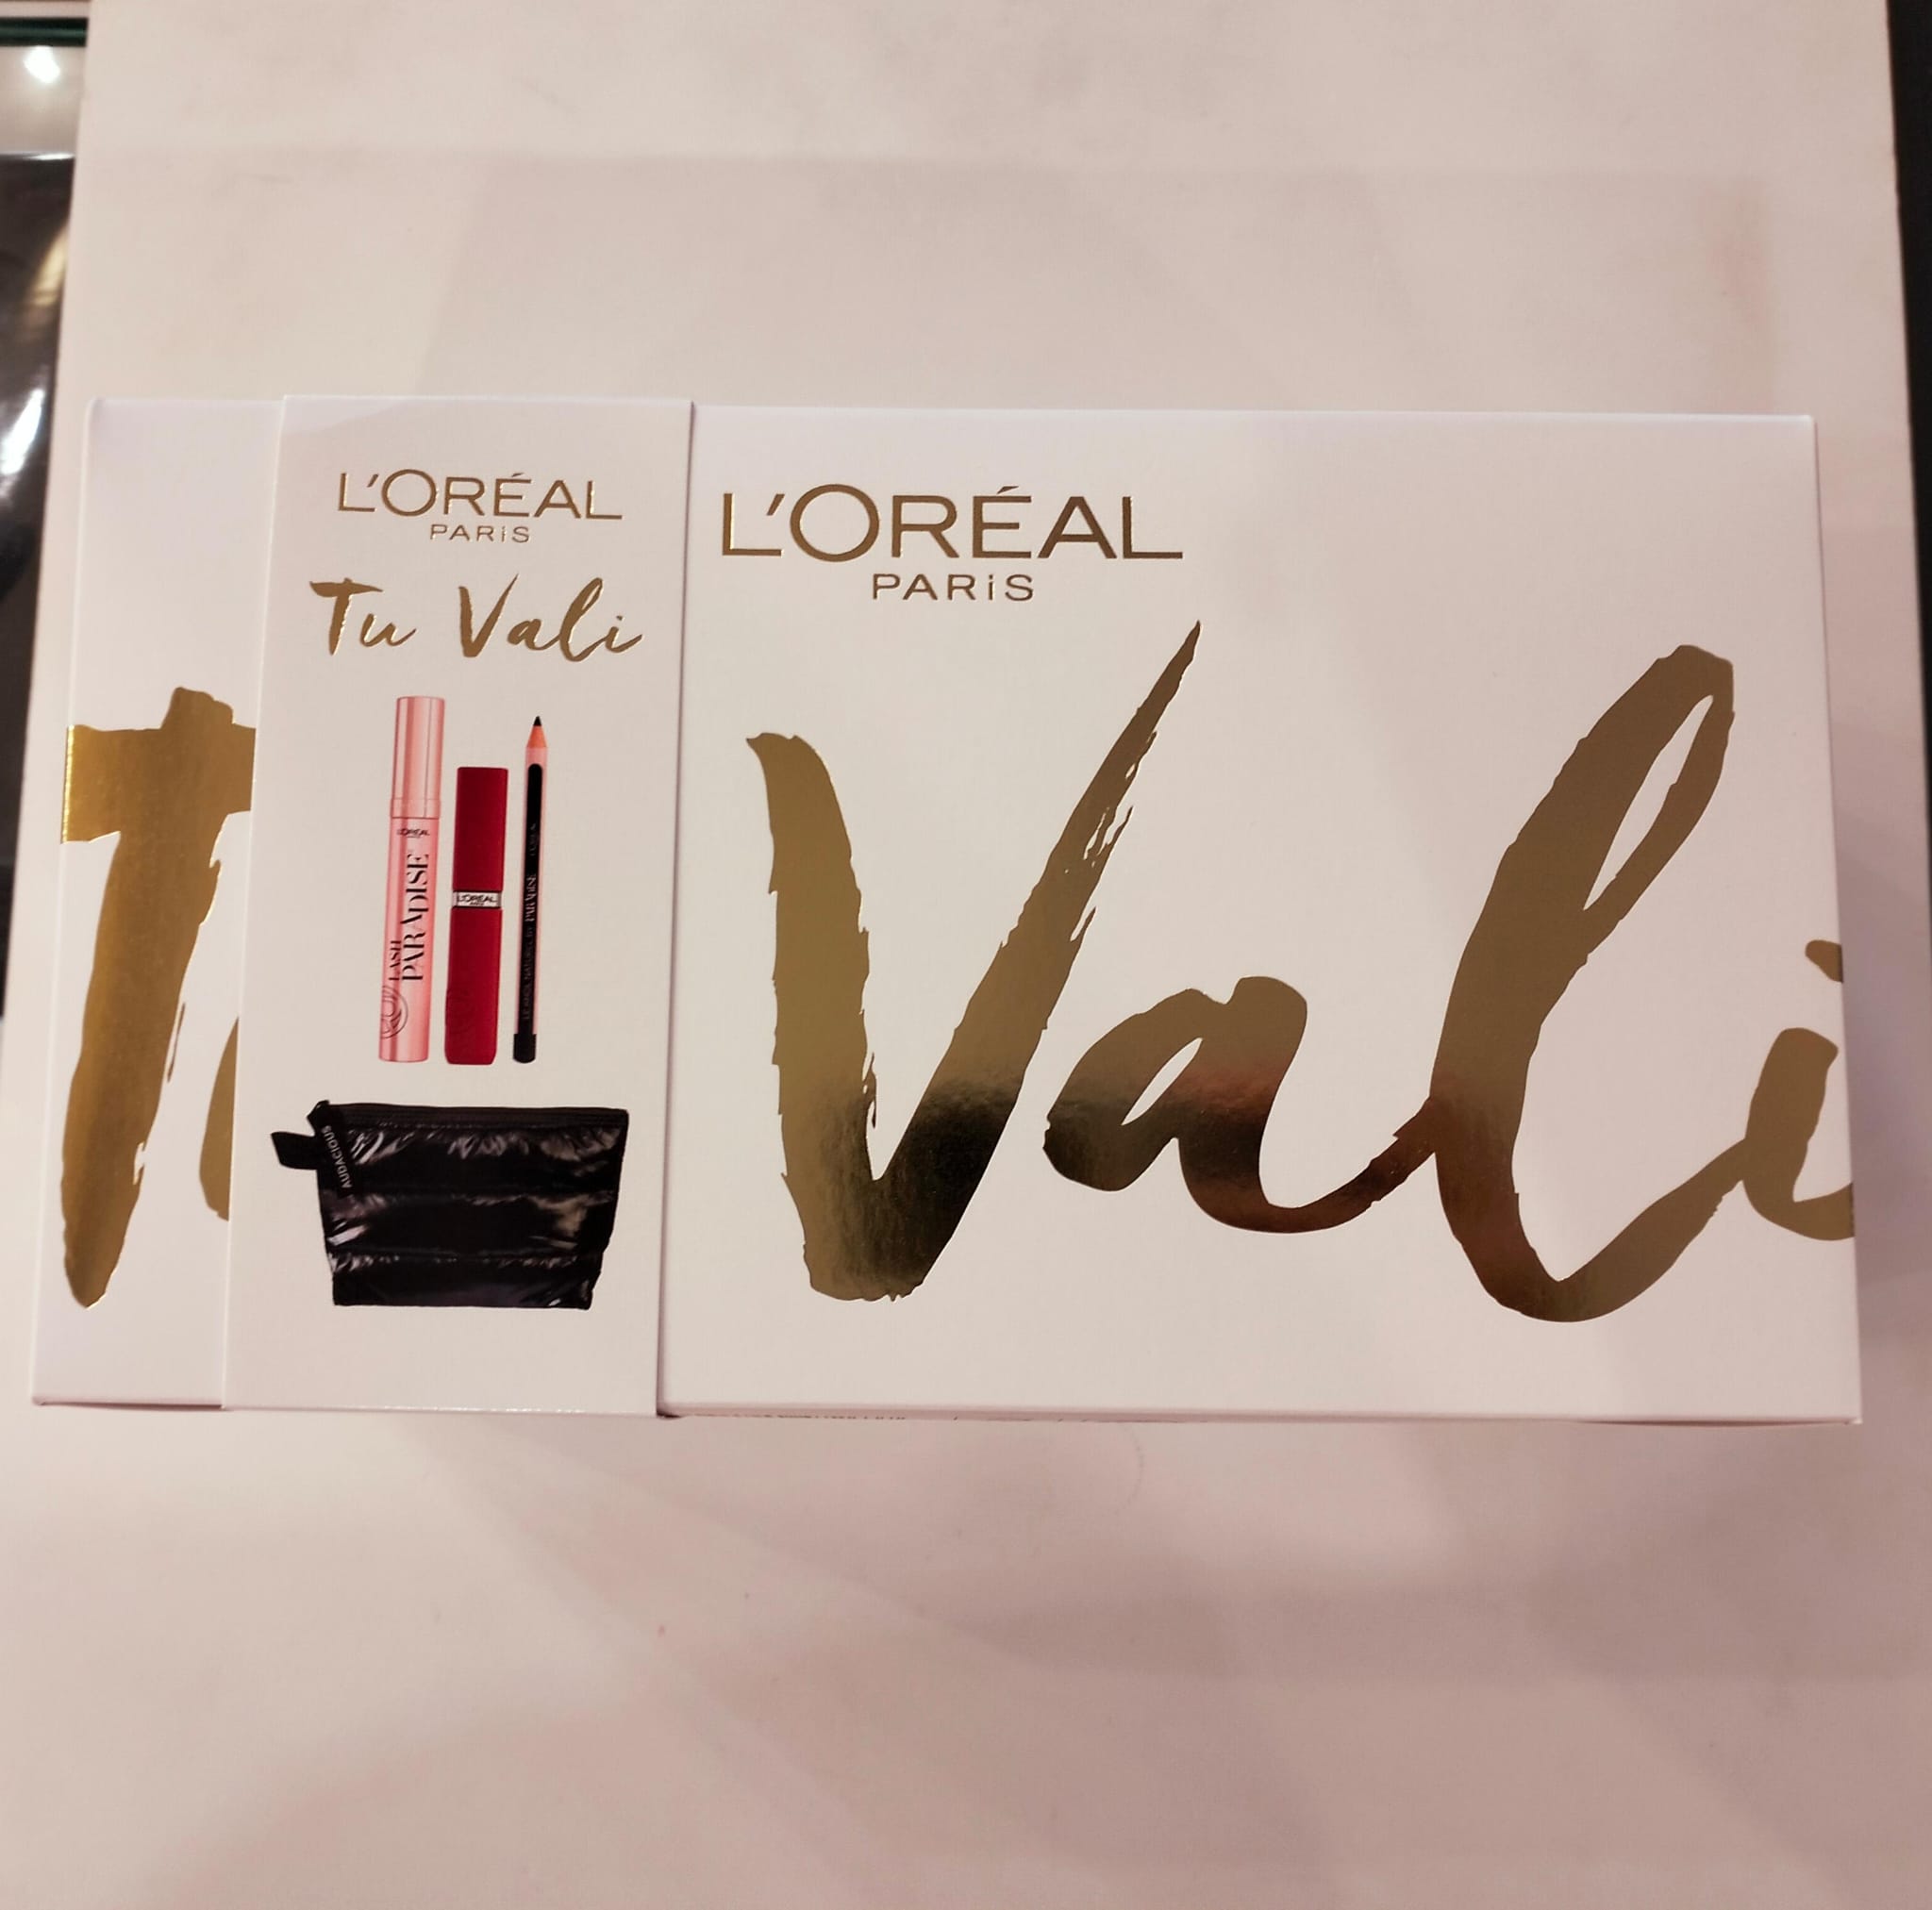 KIT L'Oréal Paris - Tu Vali - Lash Paradise